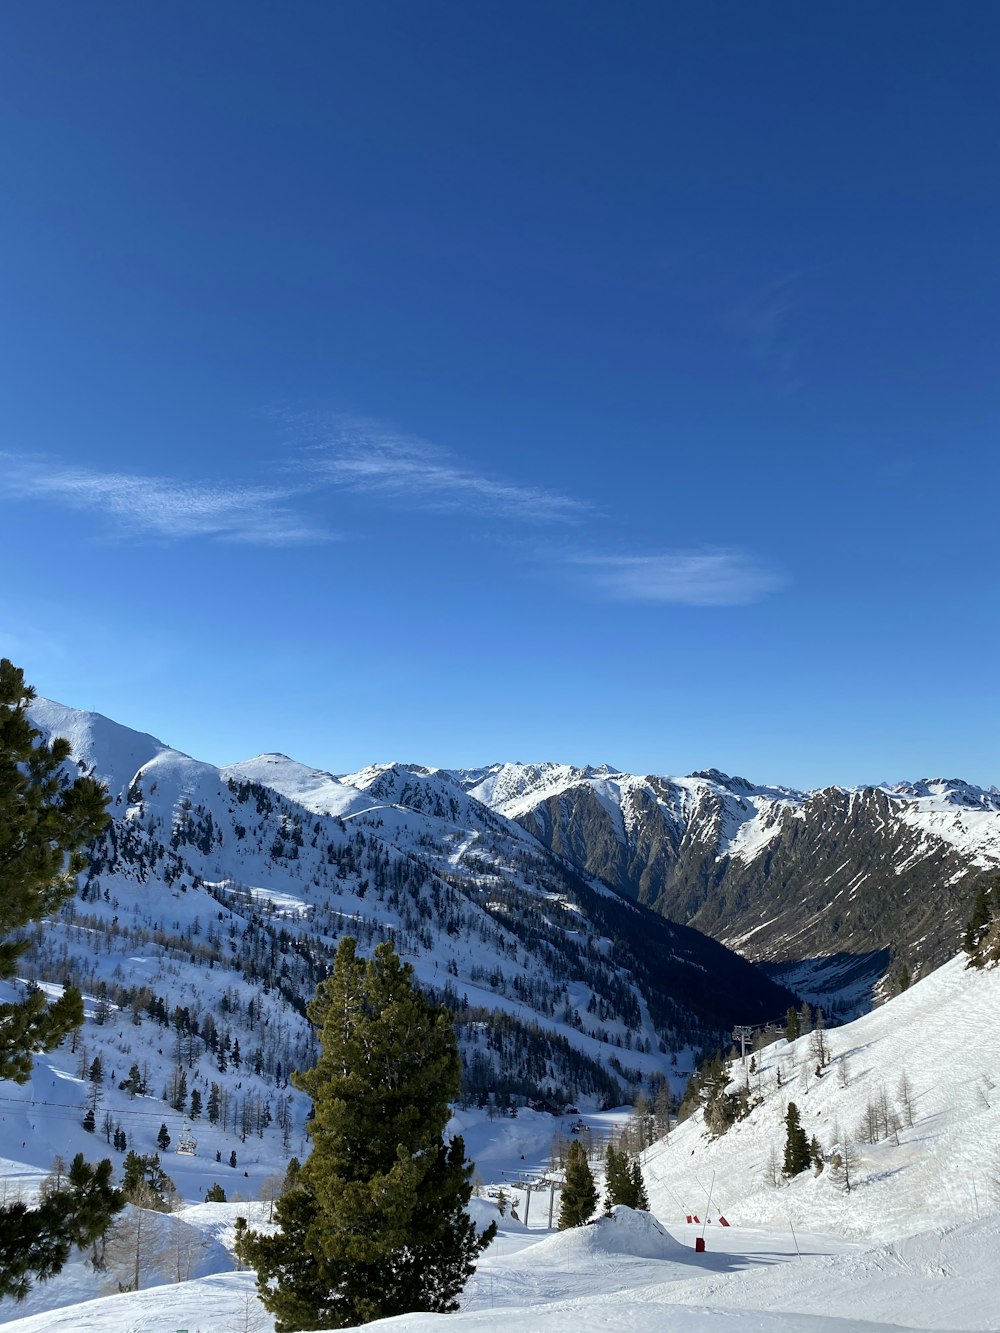 montagna coperta di neve sotto il cielo blu durante il giorno